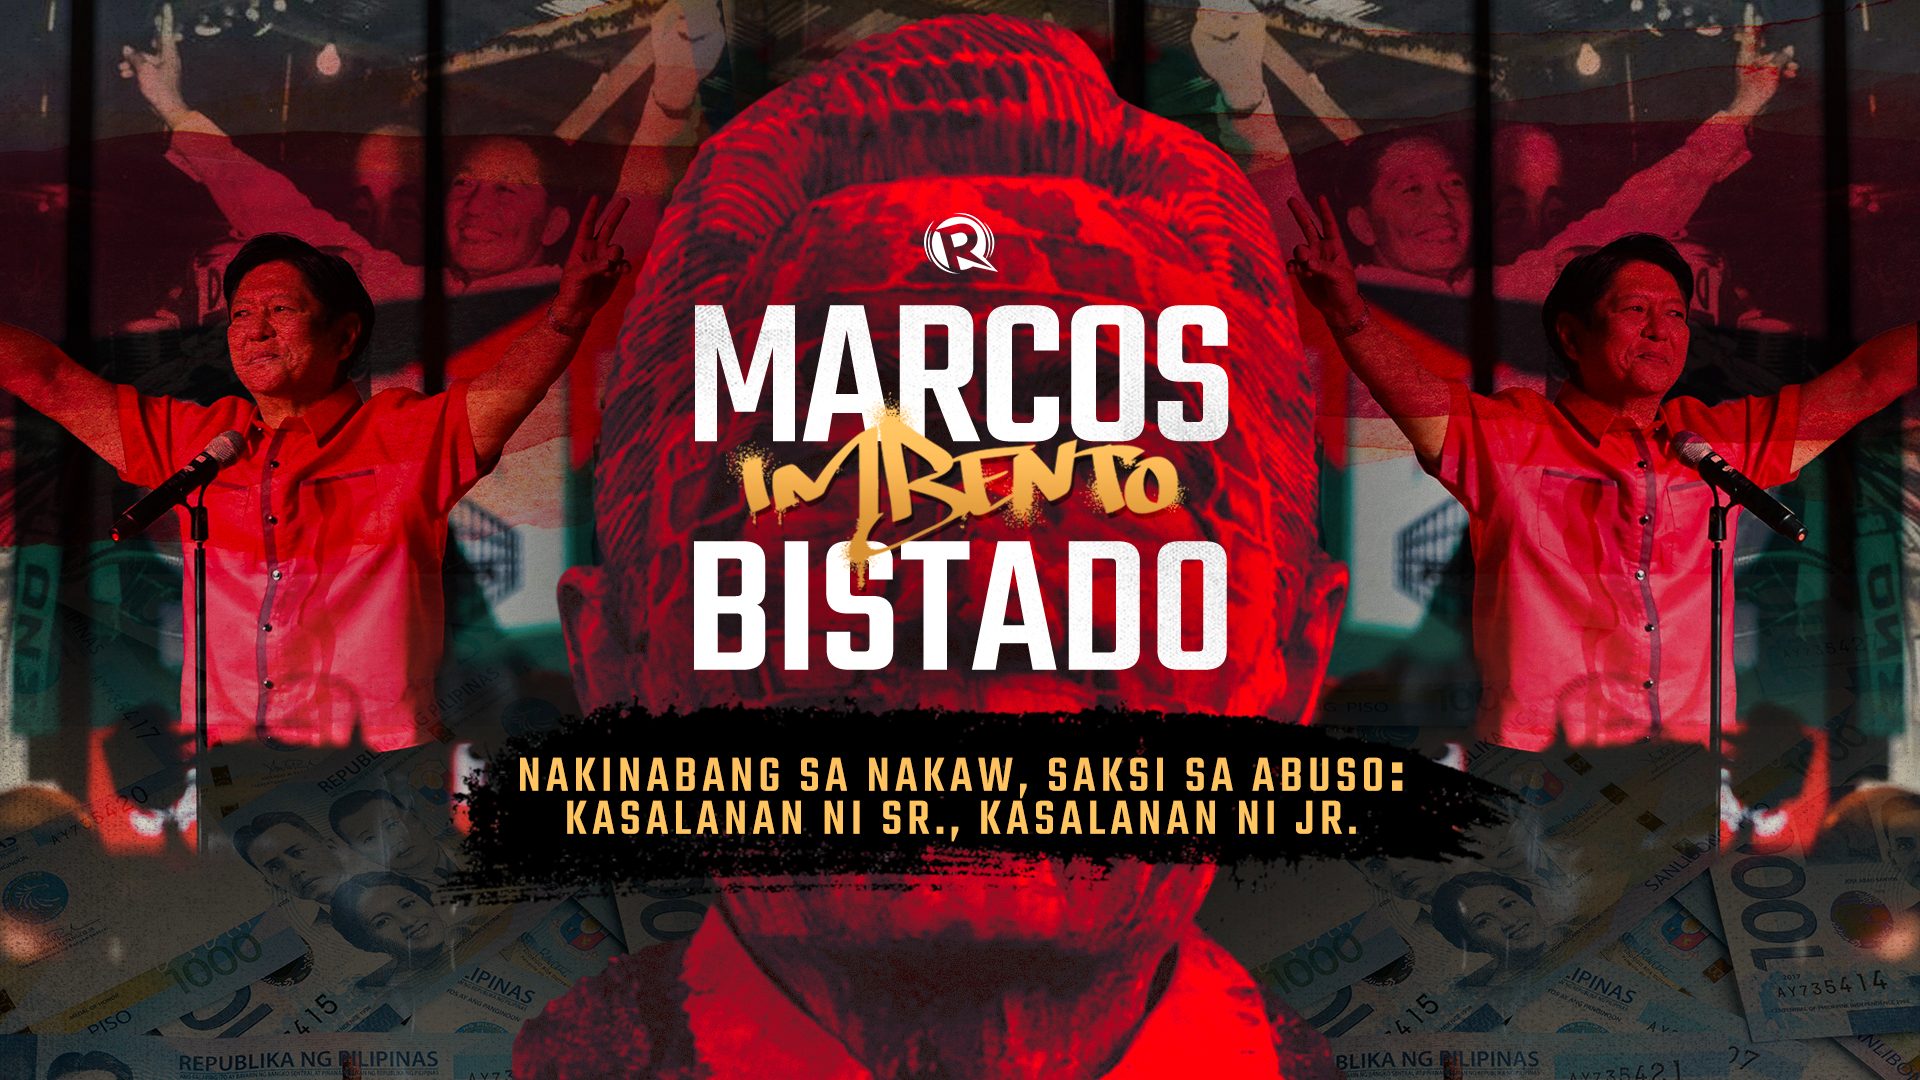 Marcos Imbento, Bistado: Ang kasalanan ni Senior, kasalanan ni Junior